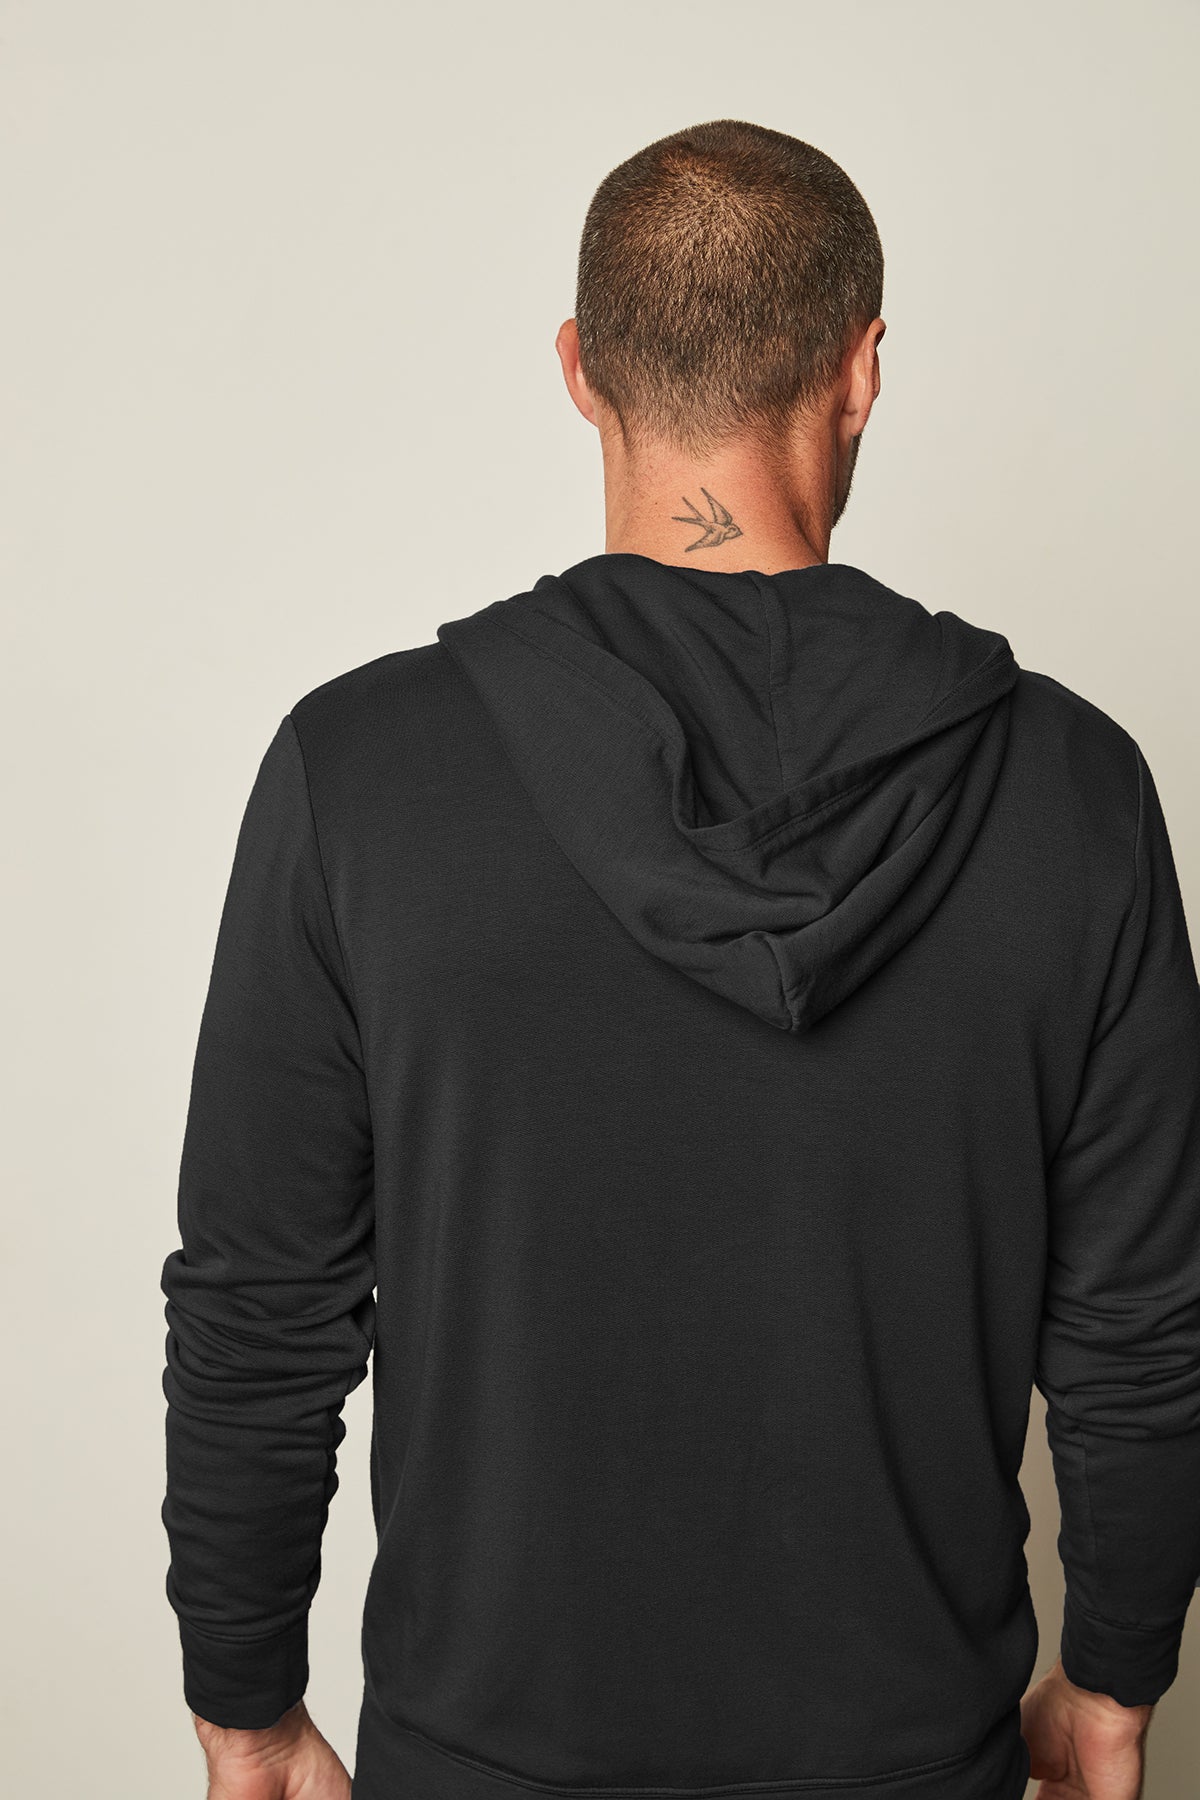 Rodan Luxe Fleece Zip Hoodie in black back-25288456503489